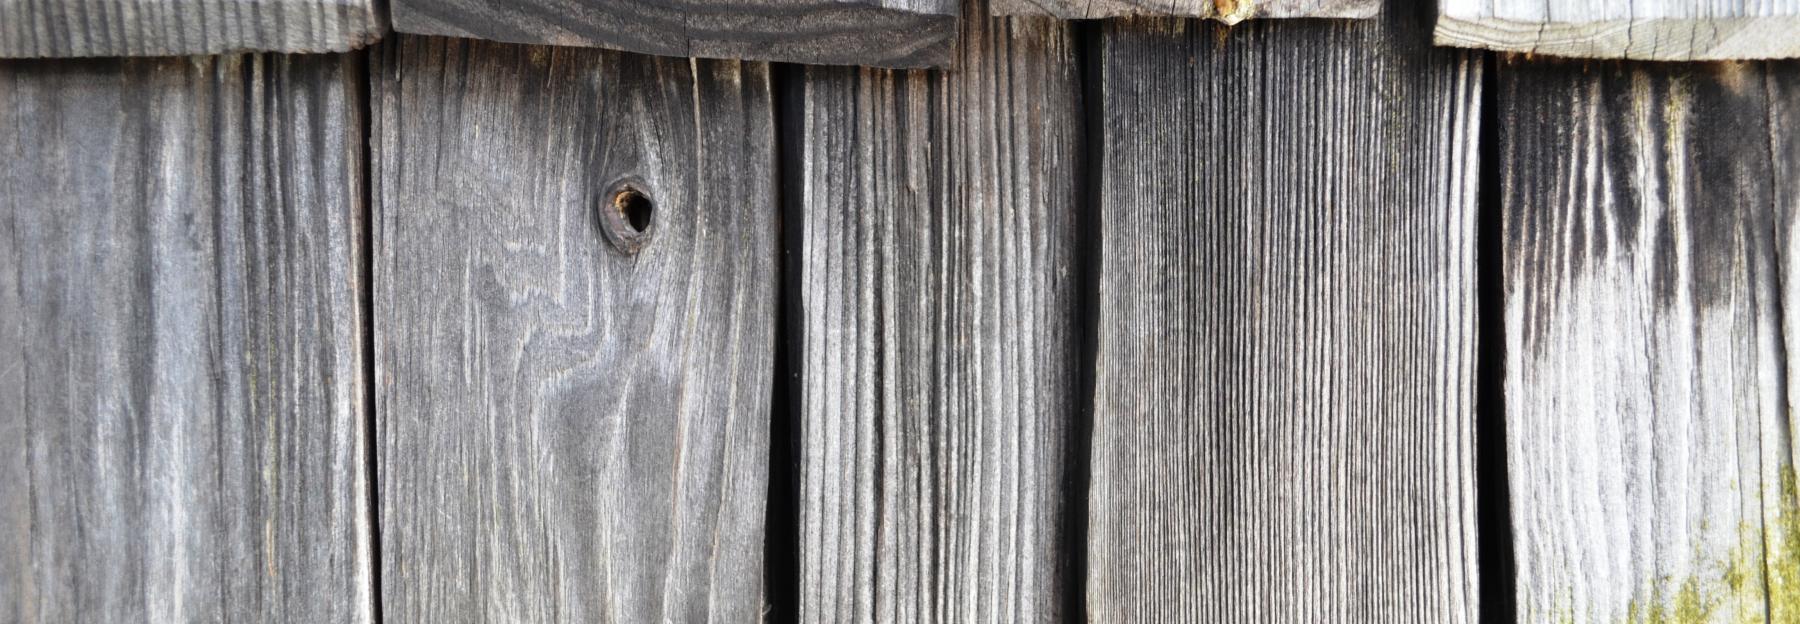 Holzschindel als Fassadenverkleidung, grau verwittert